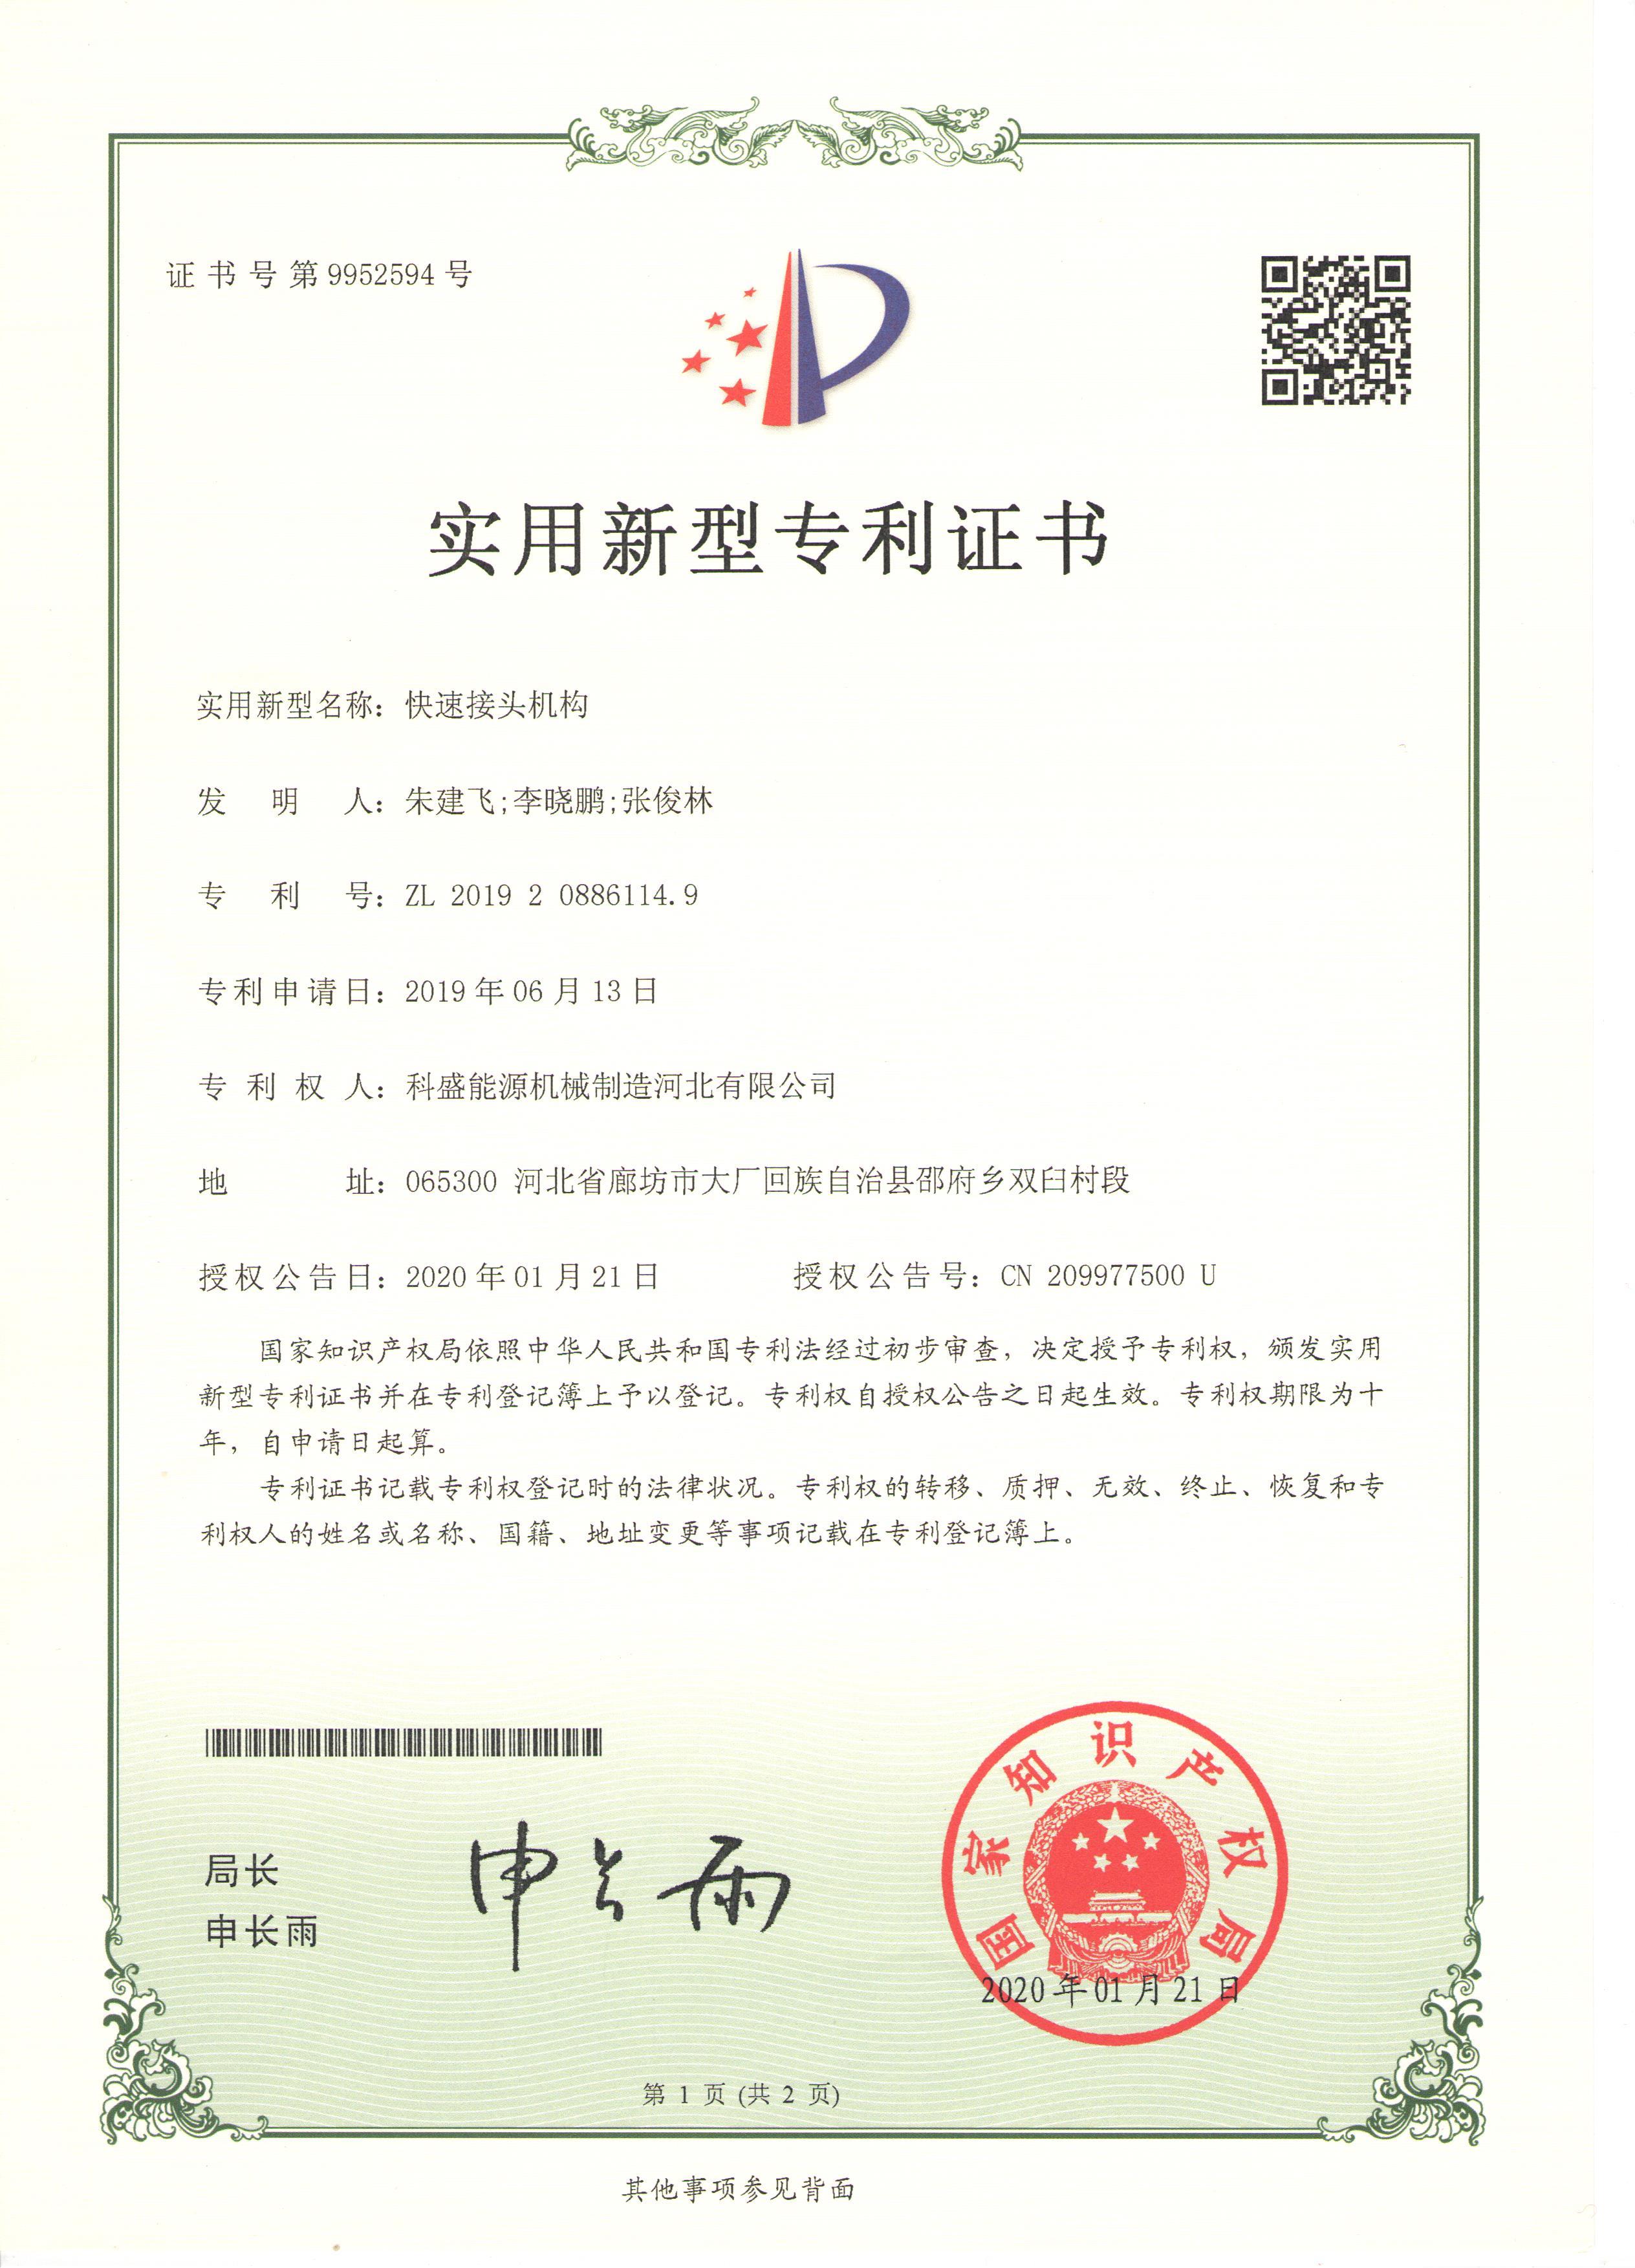 Механизм быстрого соединения - патентный сертификат